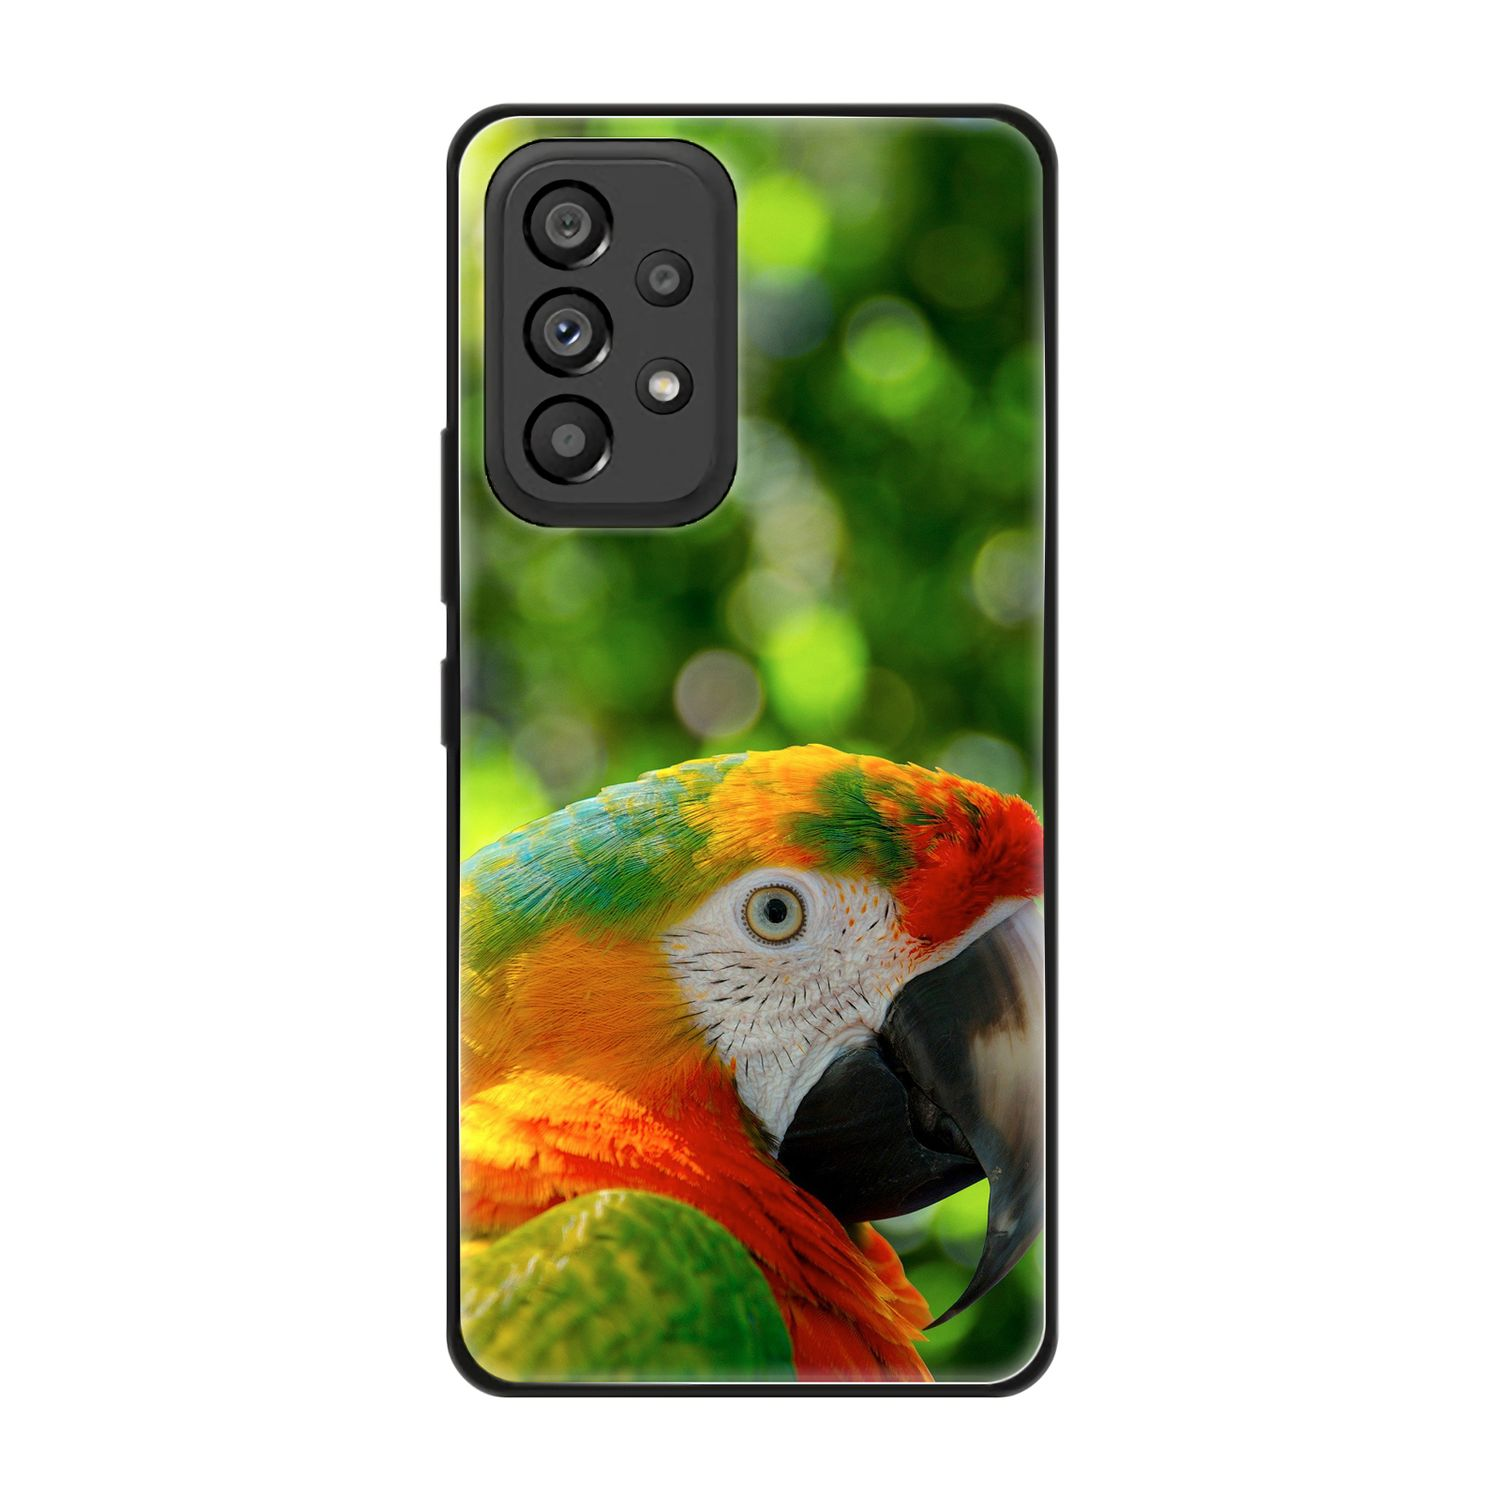 Papagei Backcover, Galaxy KÖNIG Samsung, 5G, DESIGN A53 Case,